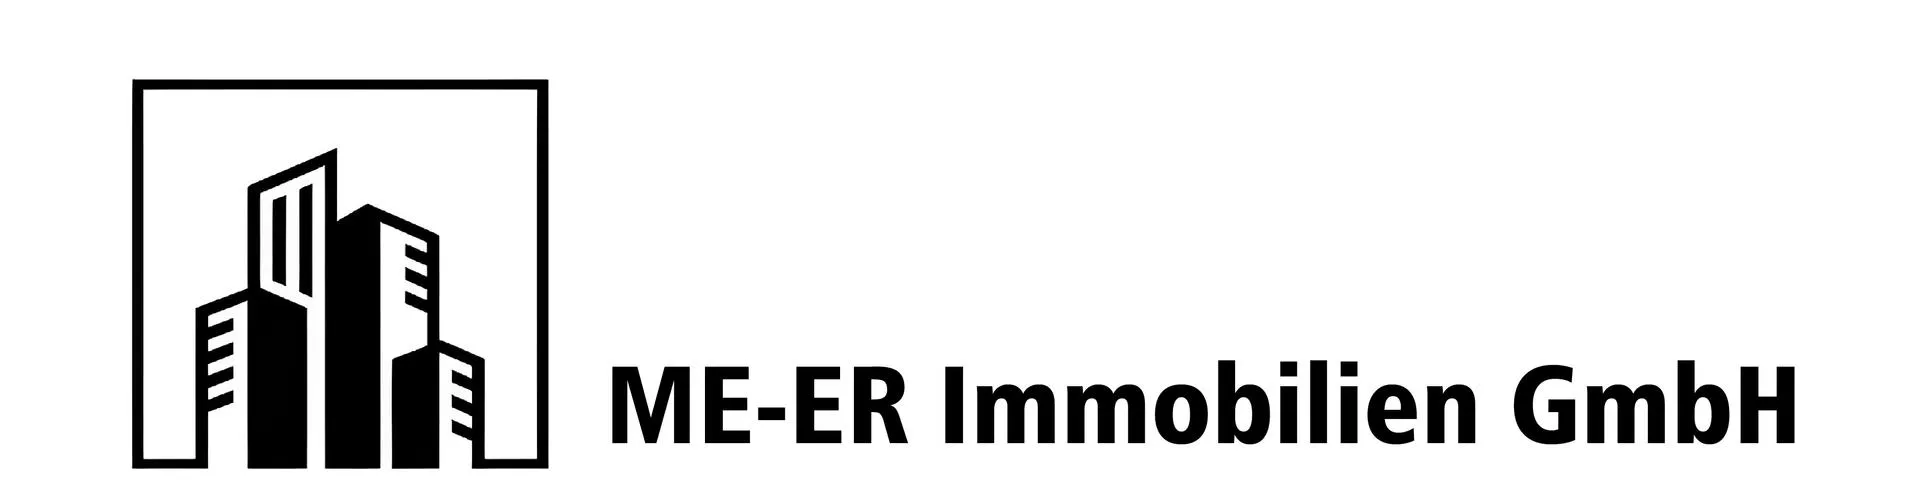 Makler ME-ER Immobilien GmbH logo